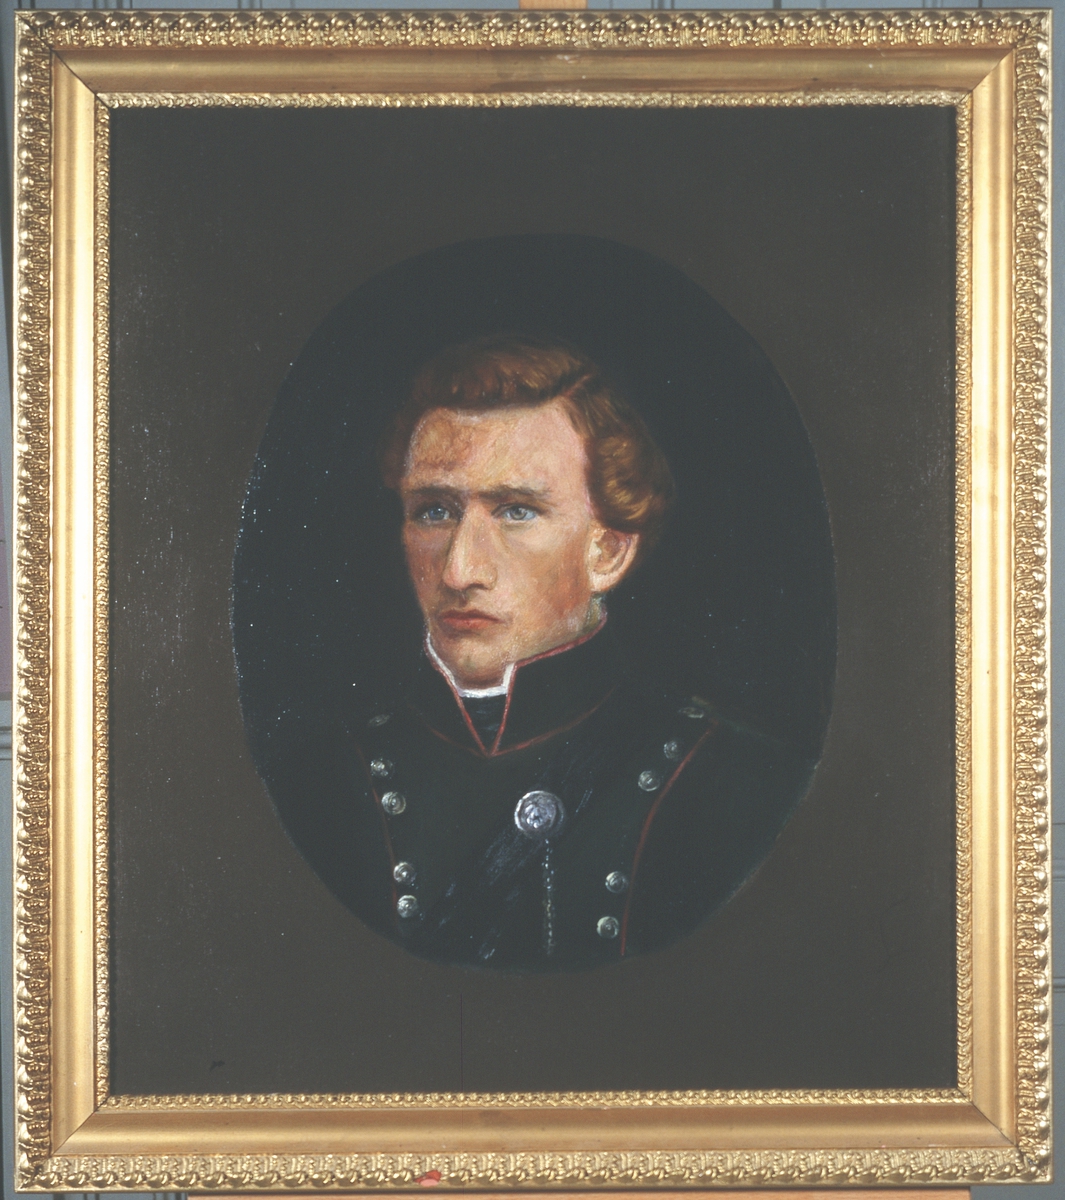 Portrett av eidsvollsmann Peter Johnsen Ertzgård
Mann innskrevet i oval, på lysere bunn
Brunt hår, uniform med smale, røde kanter, mange knapper.